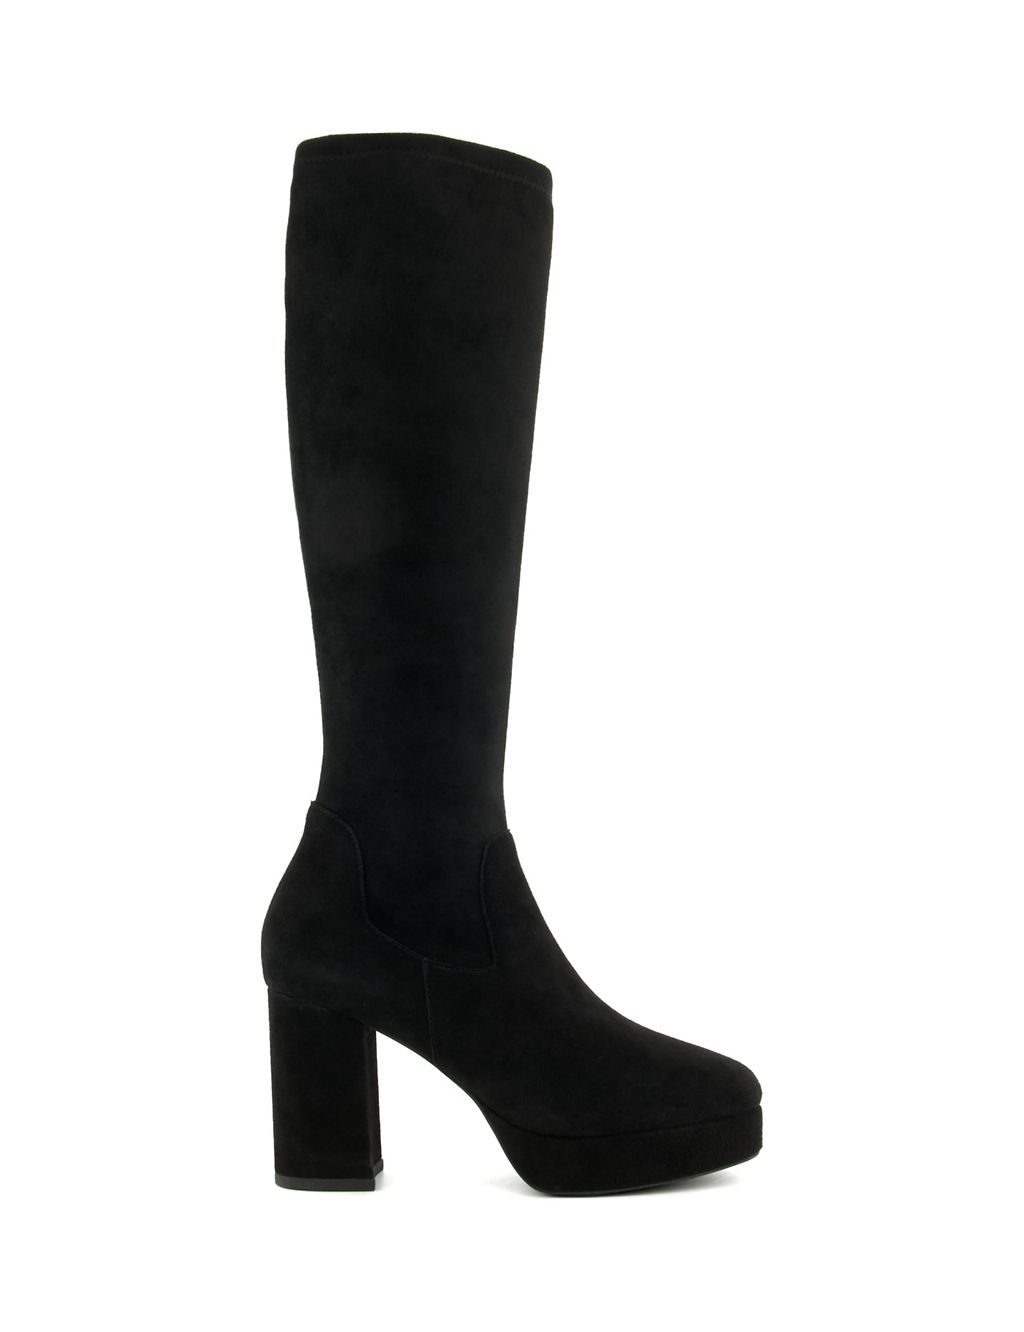 Platform Block Heel Knee High Boots | Dune London | M&S